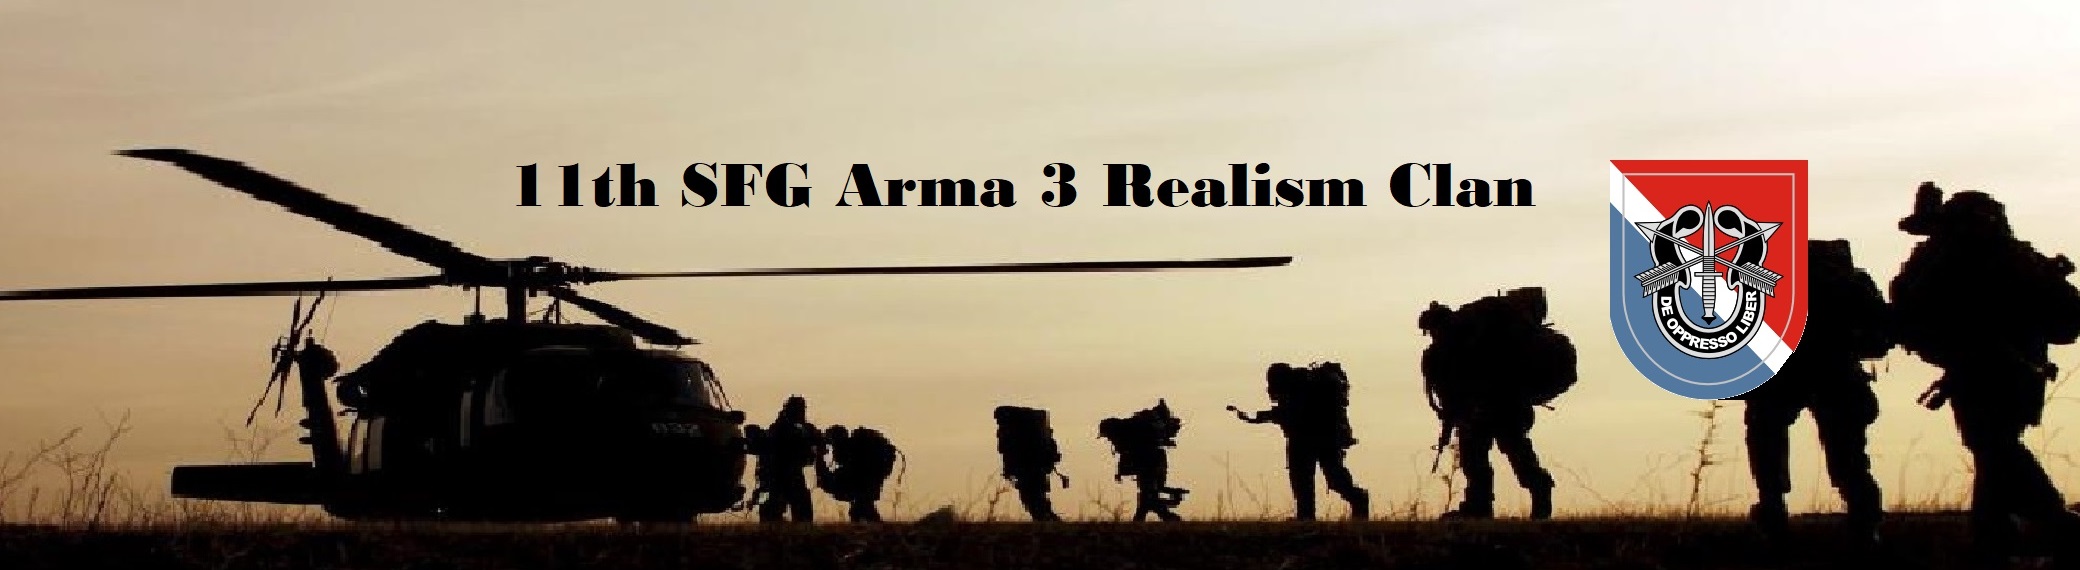 11th SFG / Arma 3 Realism Clan